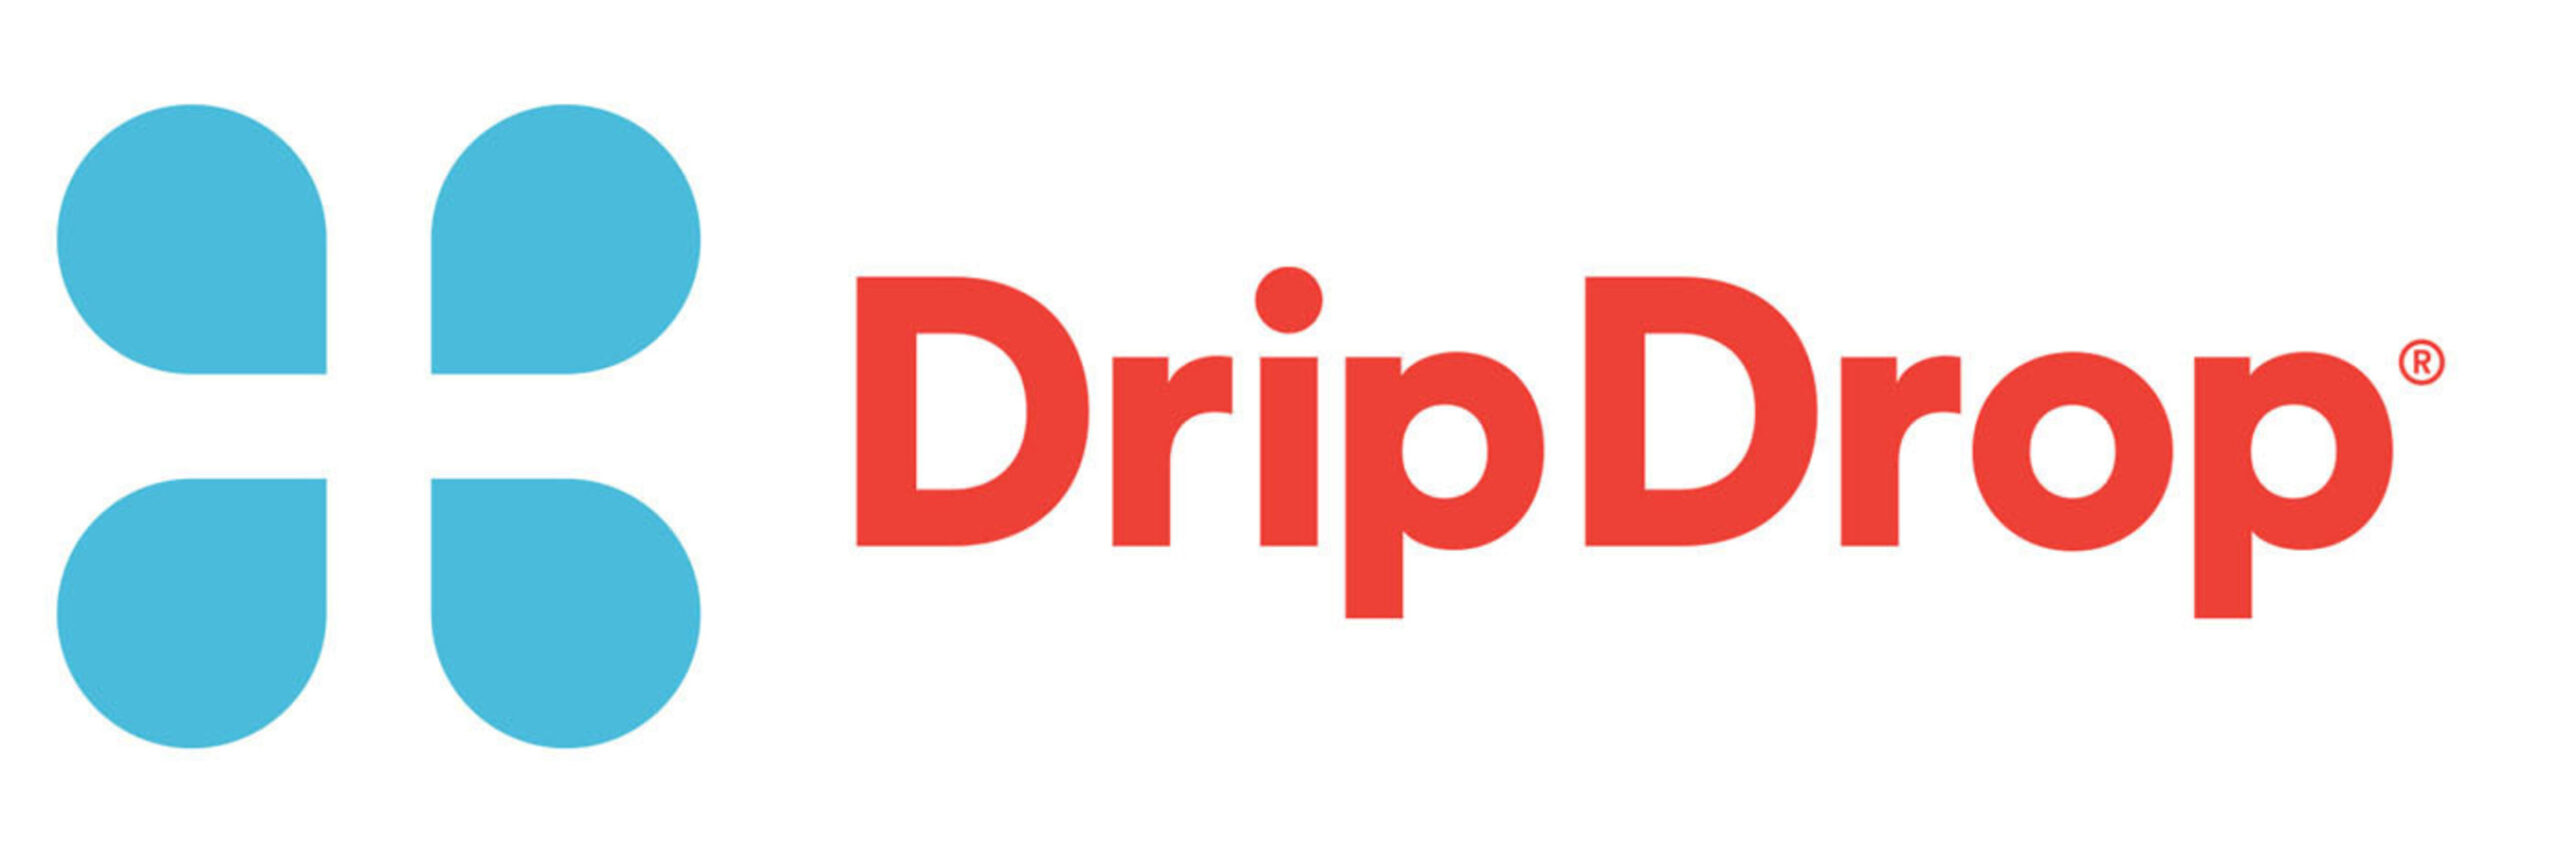 www.DripDrop.com.  (PRNewsFoto/Drip Drop, Inc.)